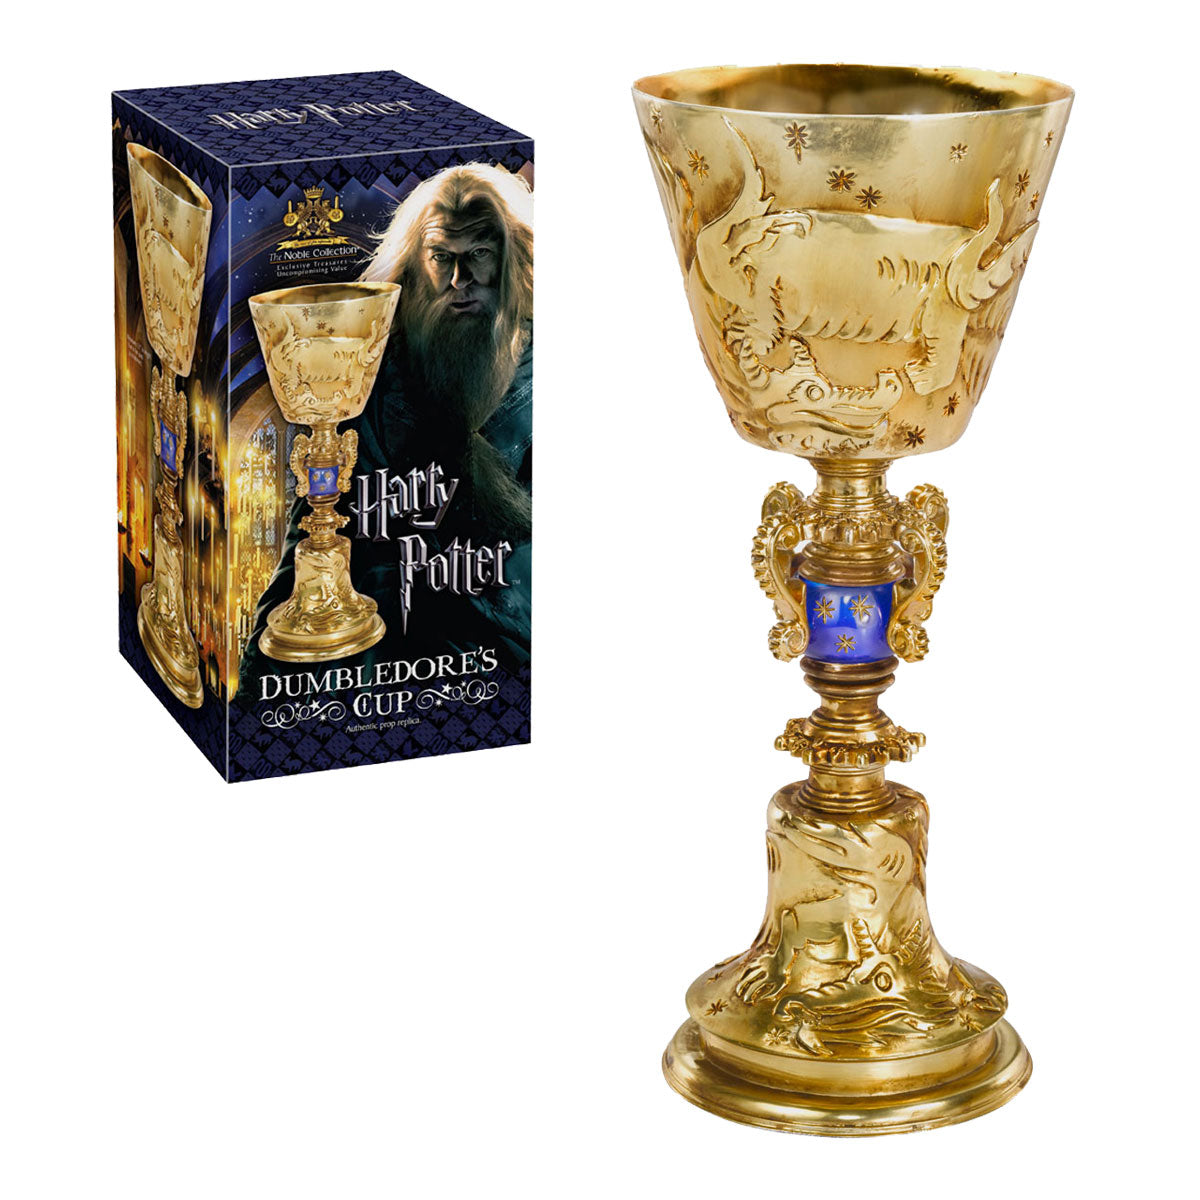 Dumbledore's Cup